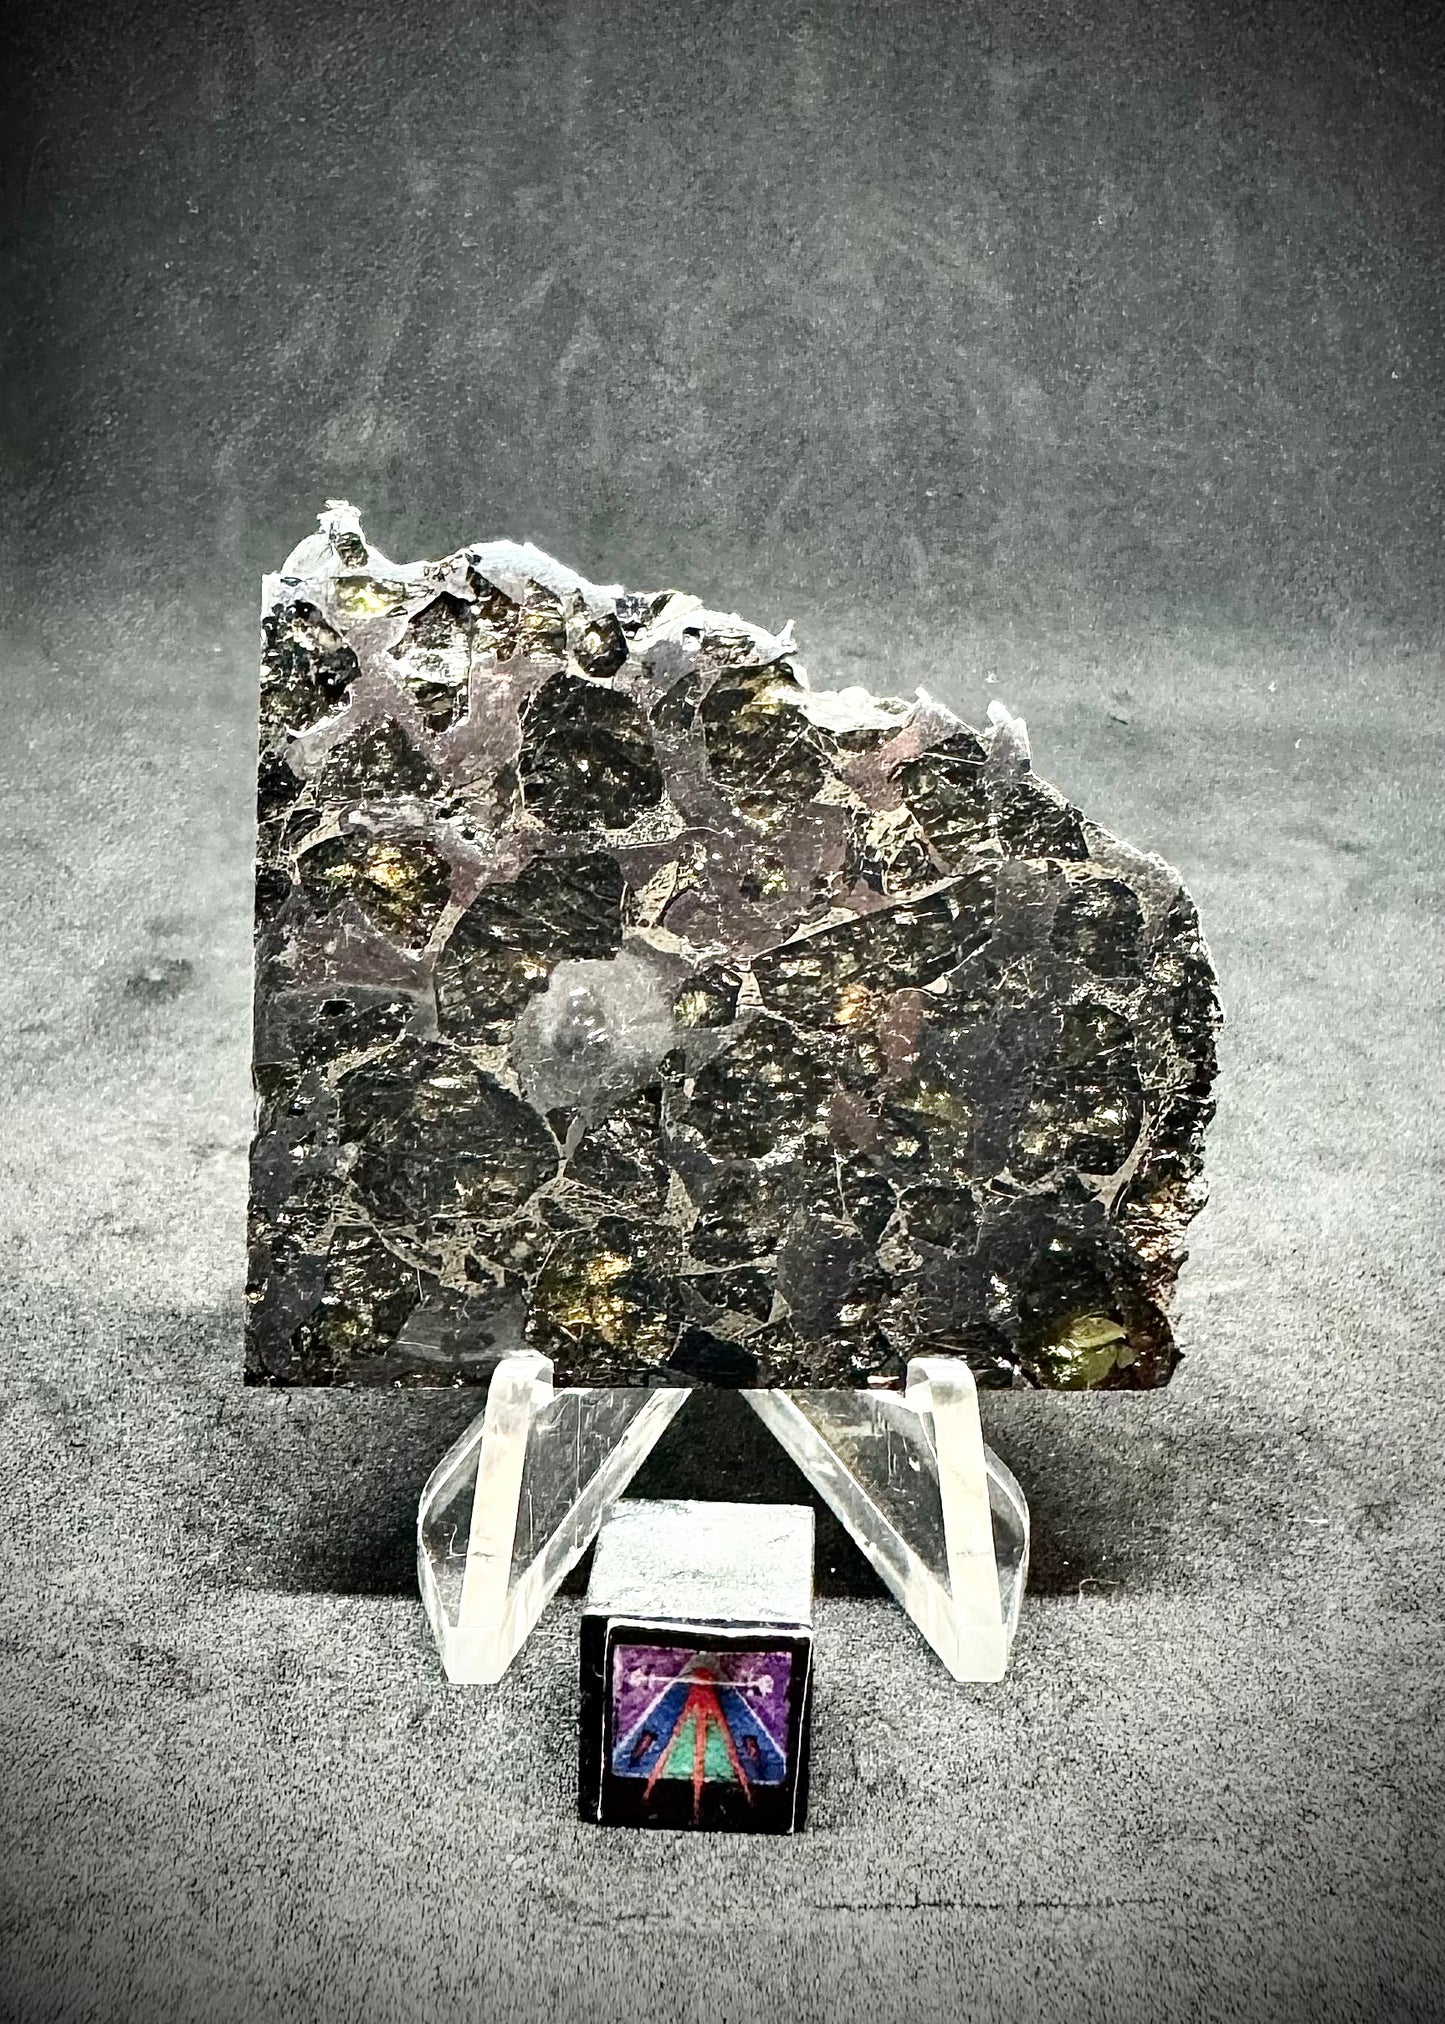 Brahin Pallasite Meteorite - 25.5g